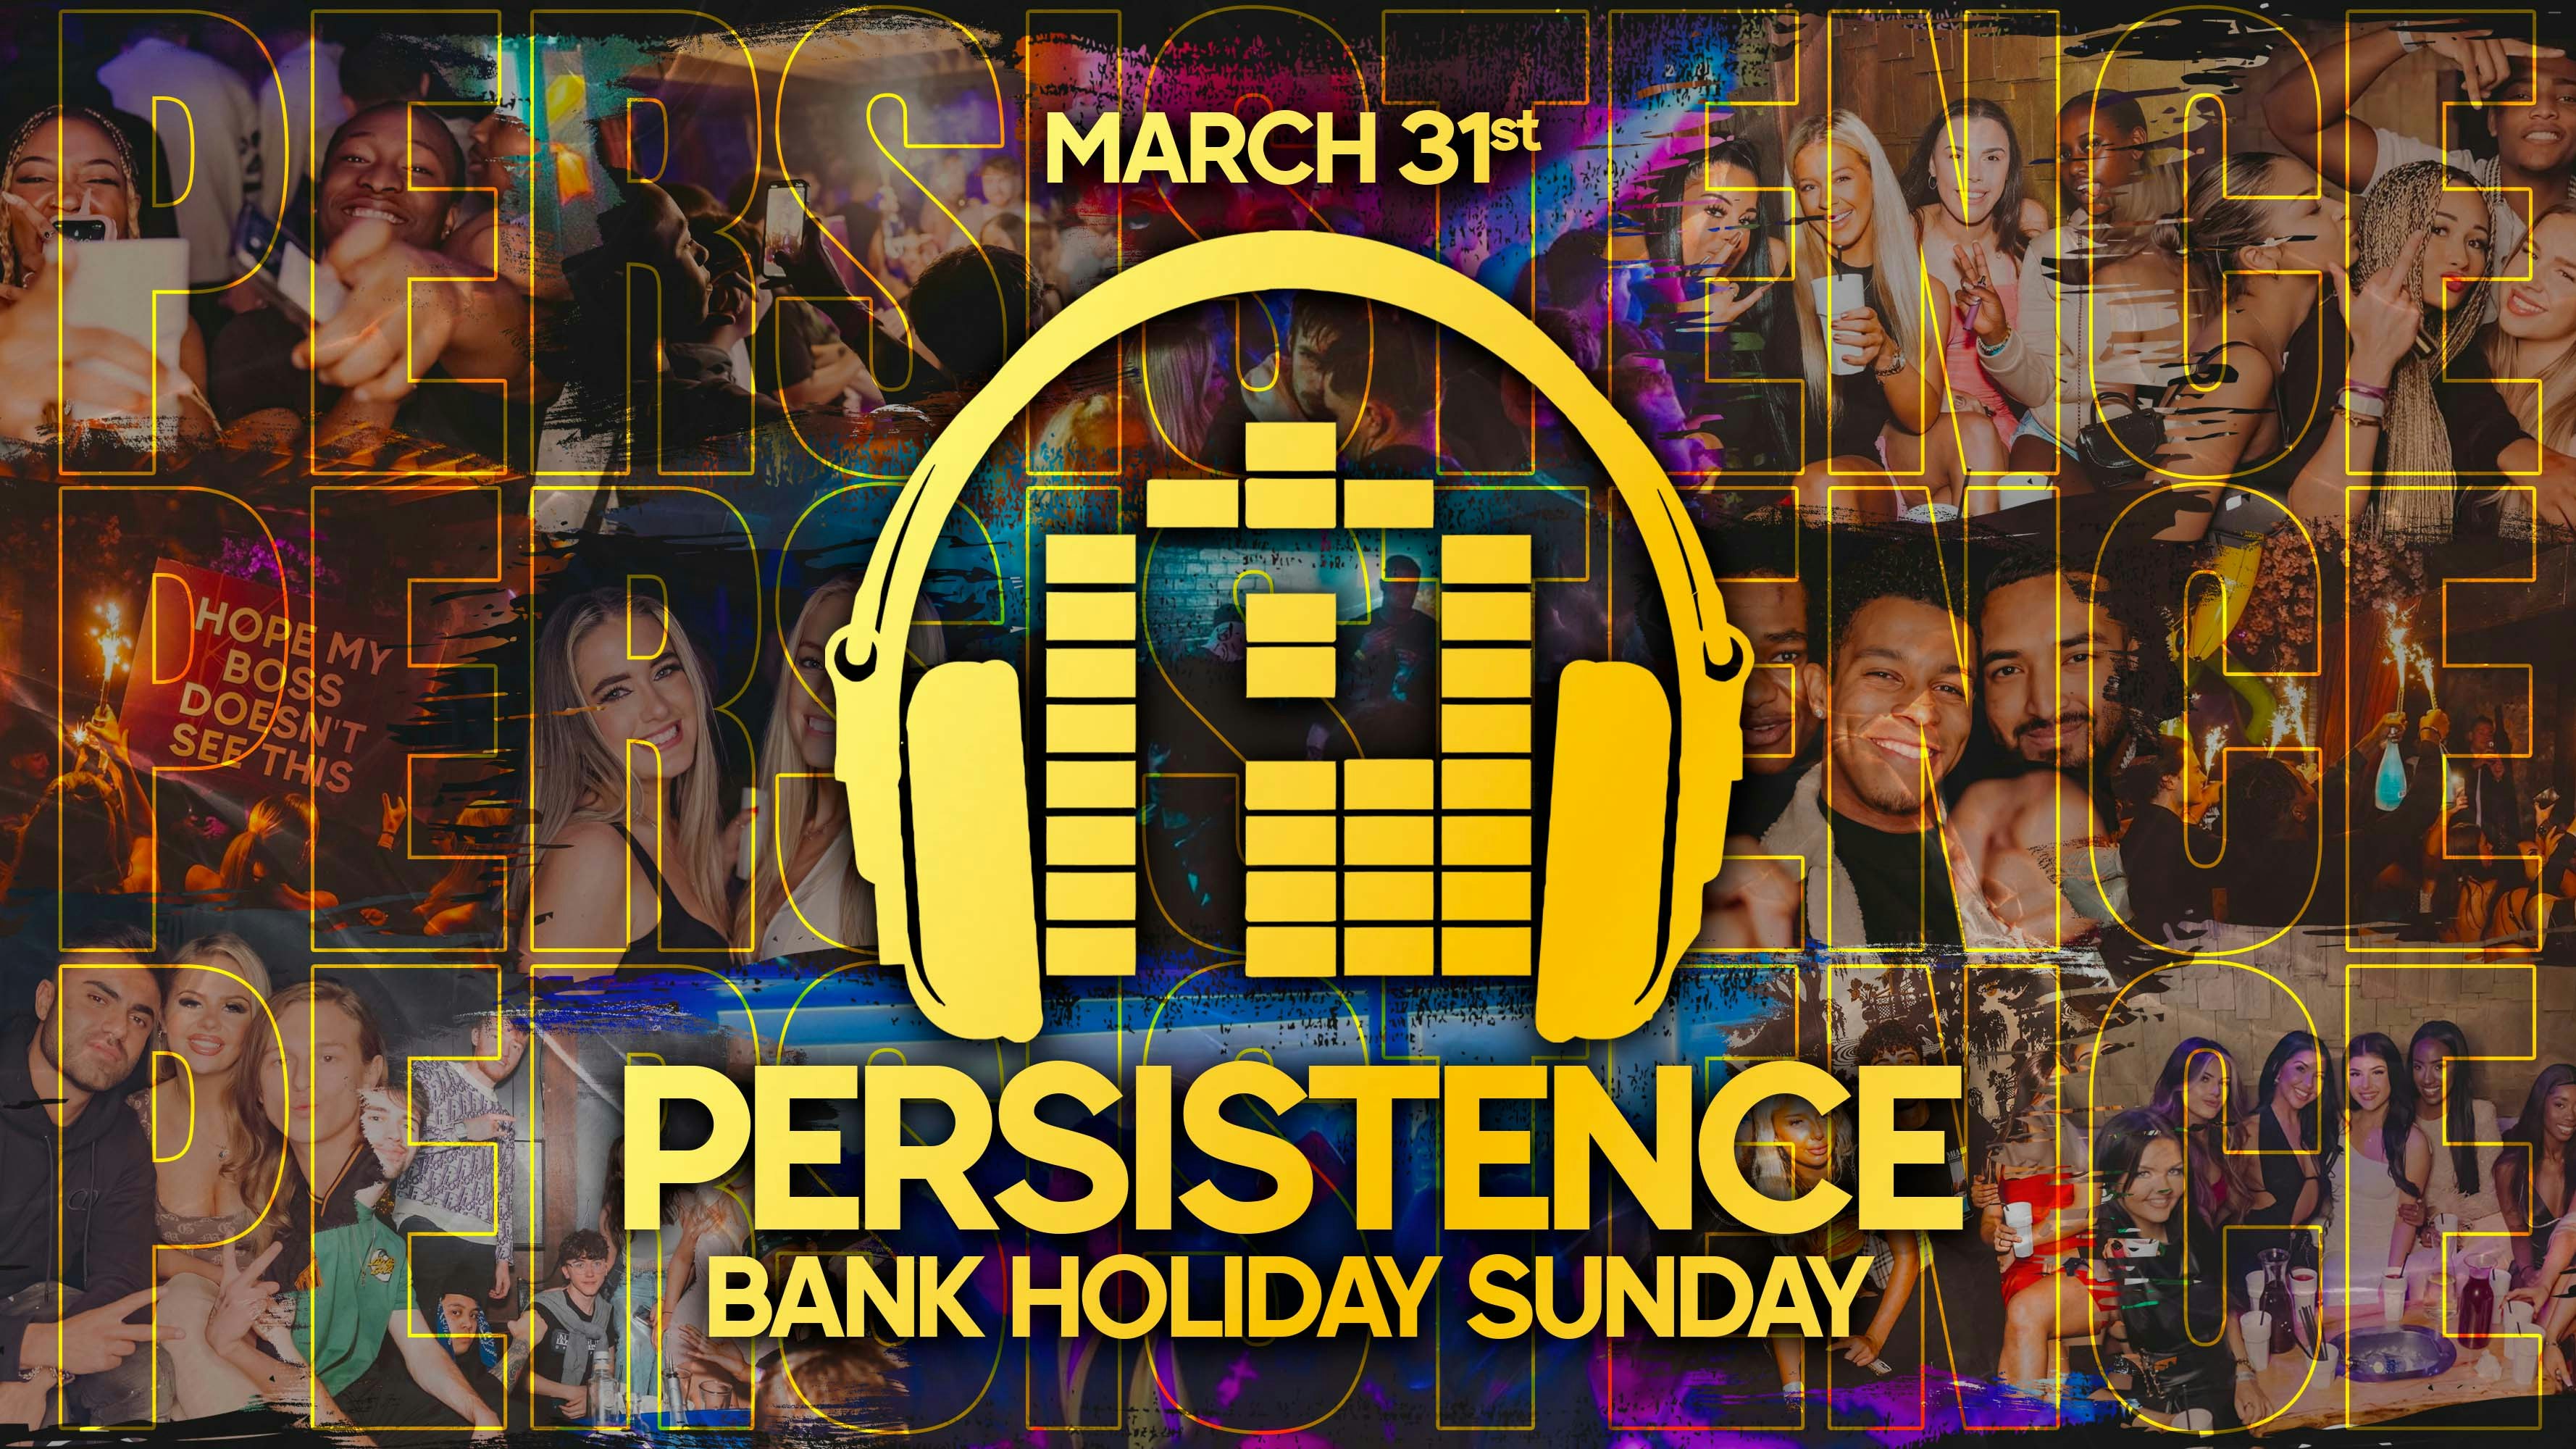 PERSISTENCE // BANK HOLIDAY SUNDAY! // TUP TUP PALACE & LOJA // MARCH 31st